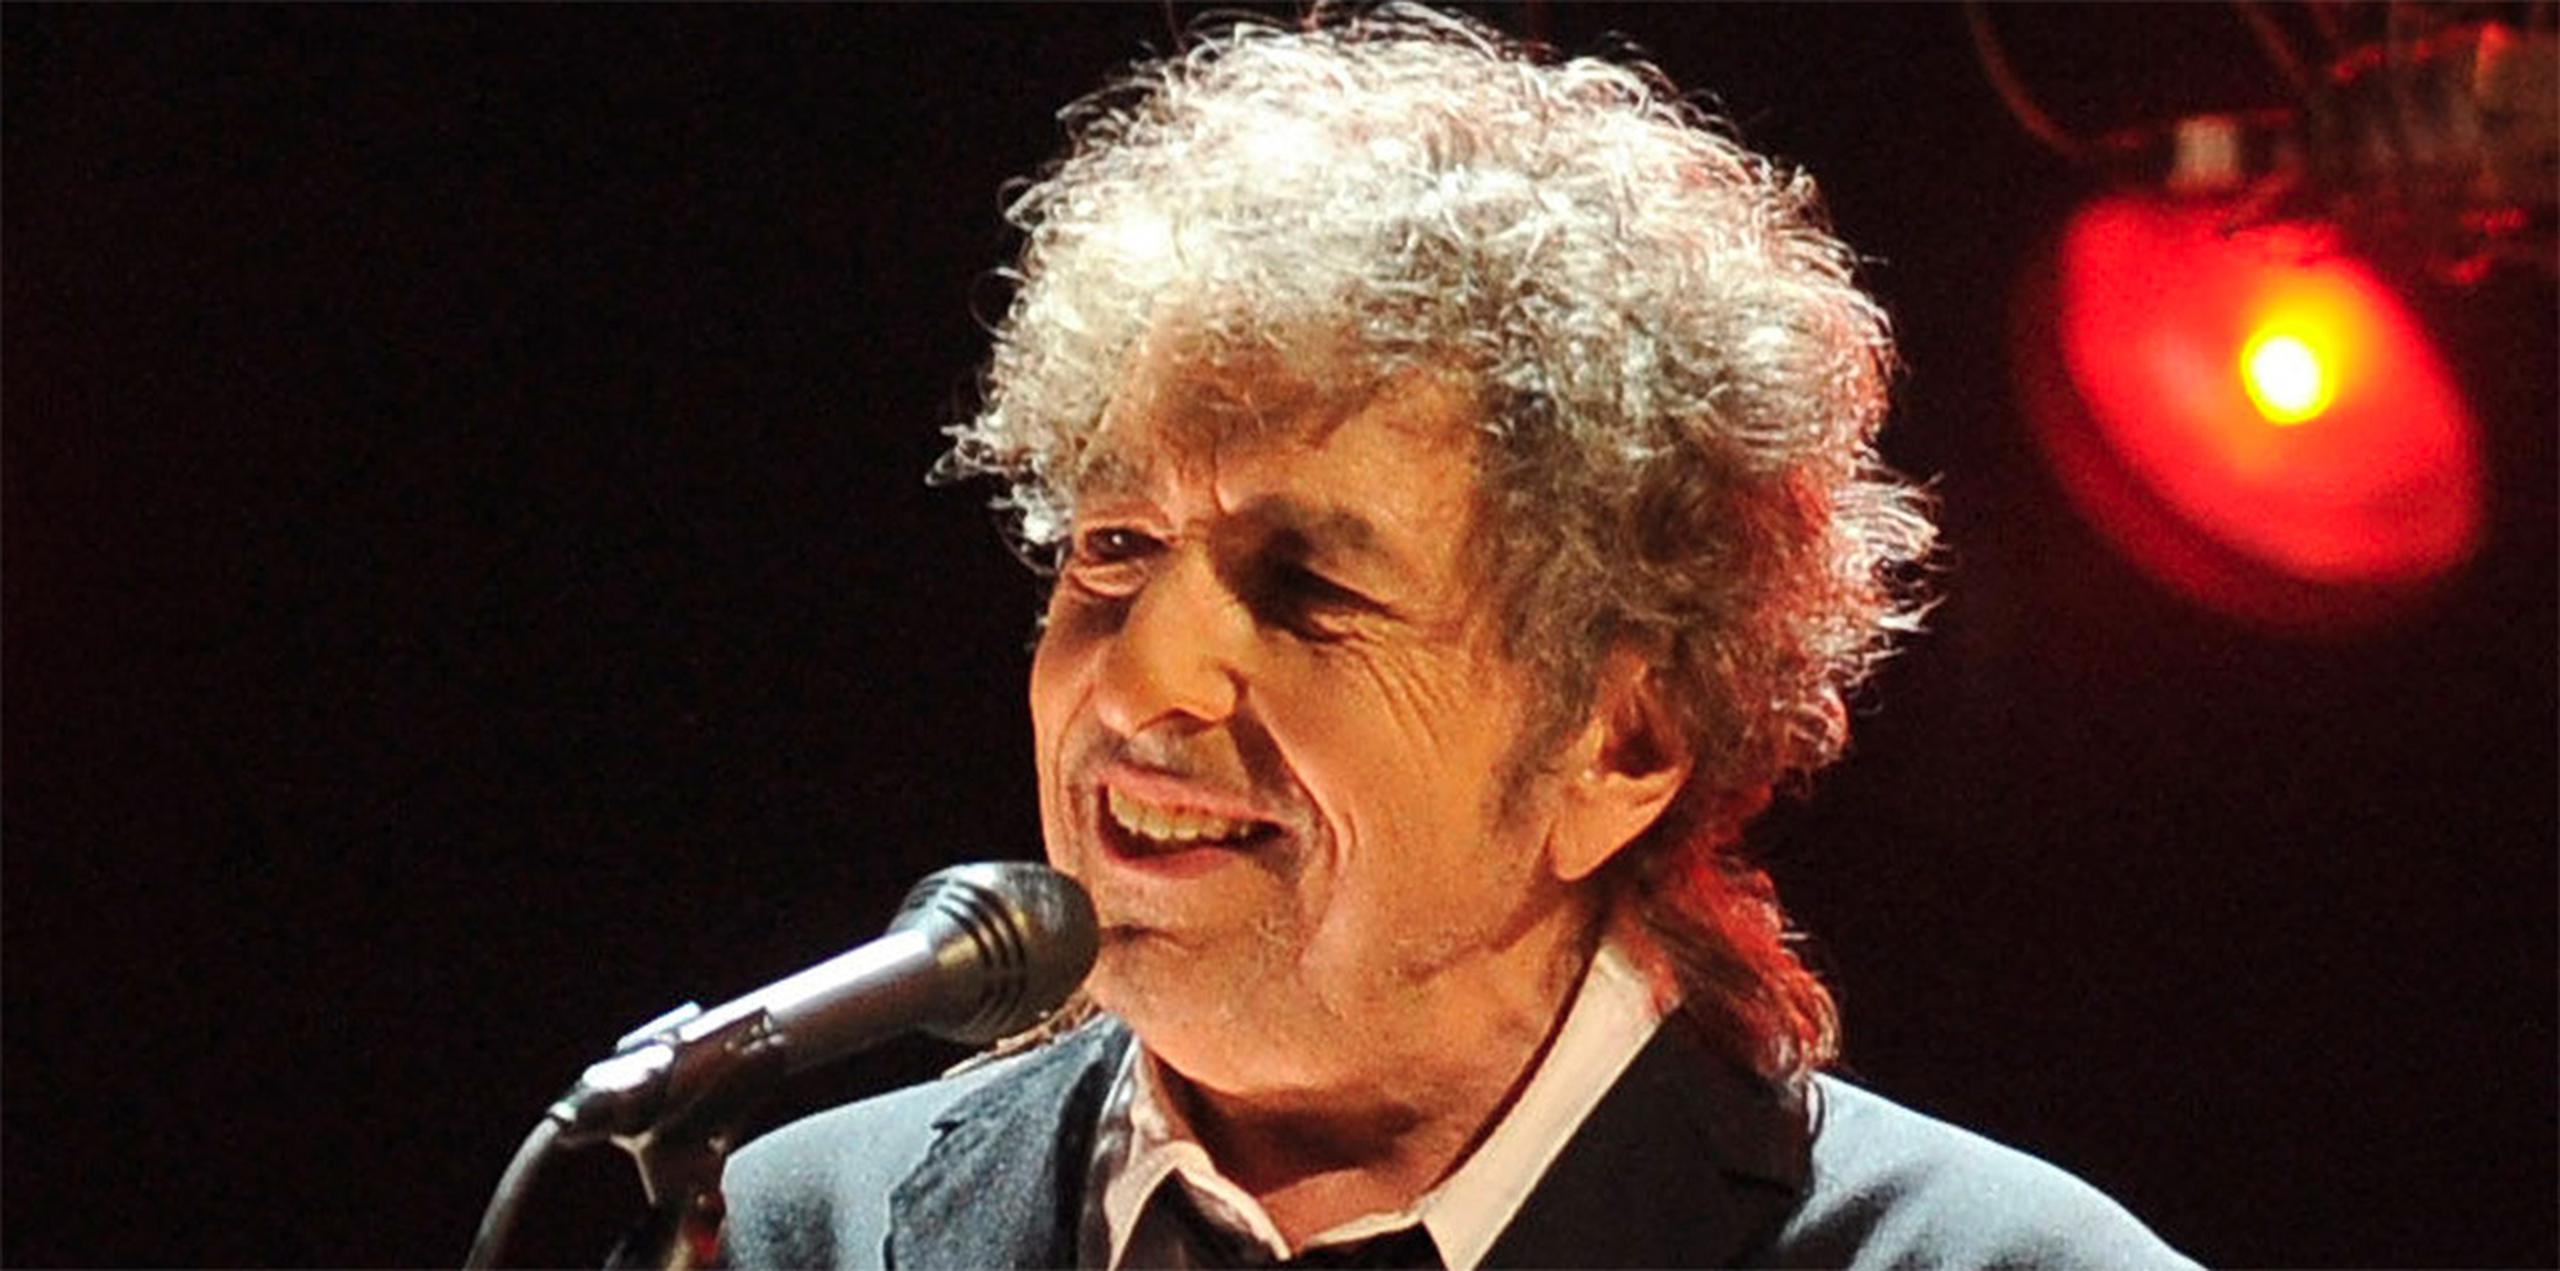 Dylan había anunciado semanas después que no acudiría ni a la conferencia de aceptación del premio ni a la ceremonia de entrega de los Nobel, aludiendo a "compromisos previos". (Archivo)